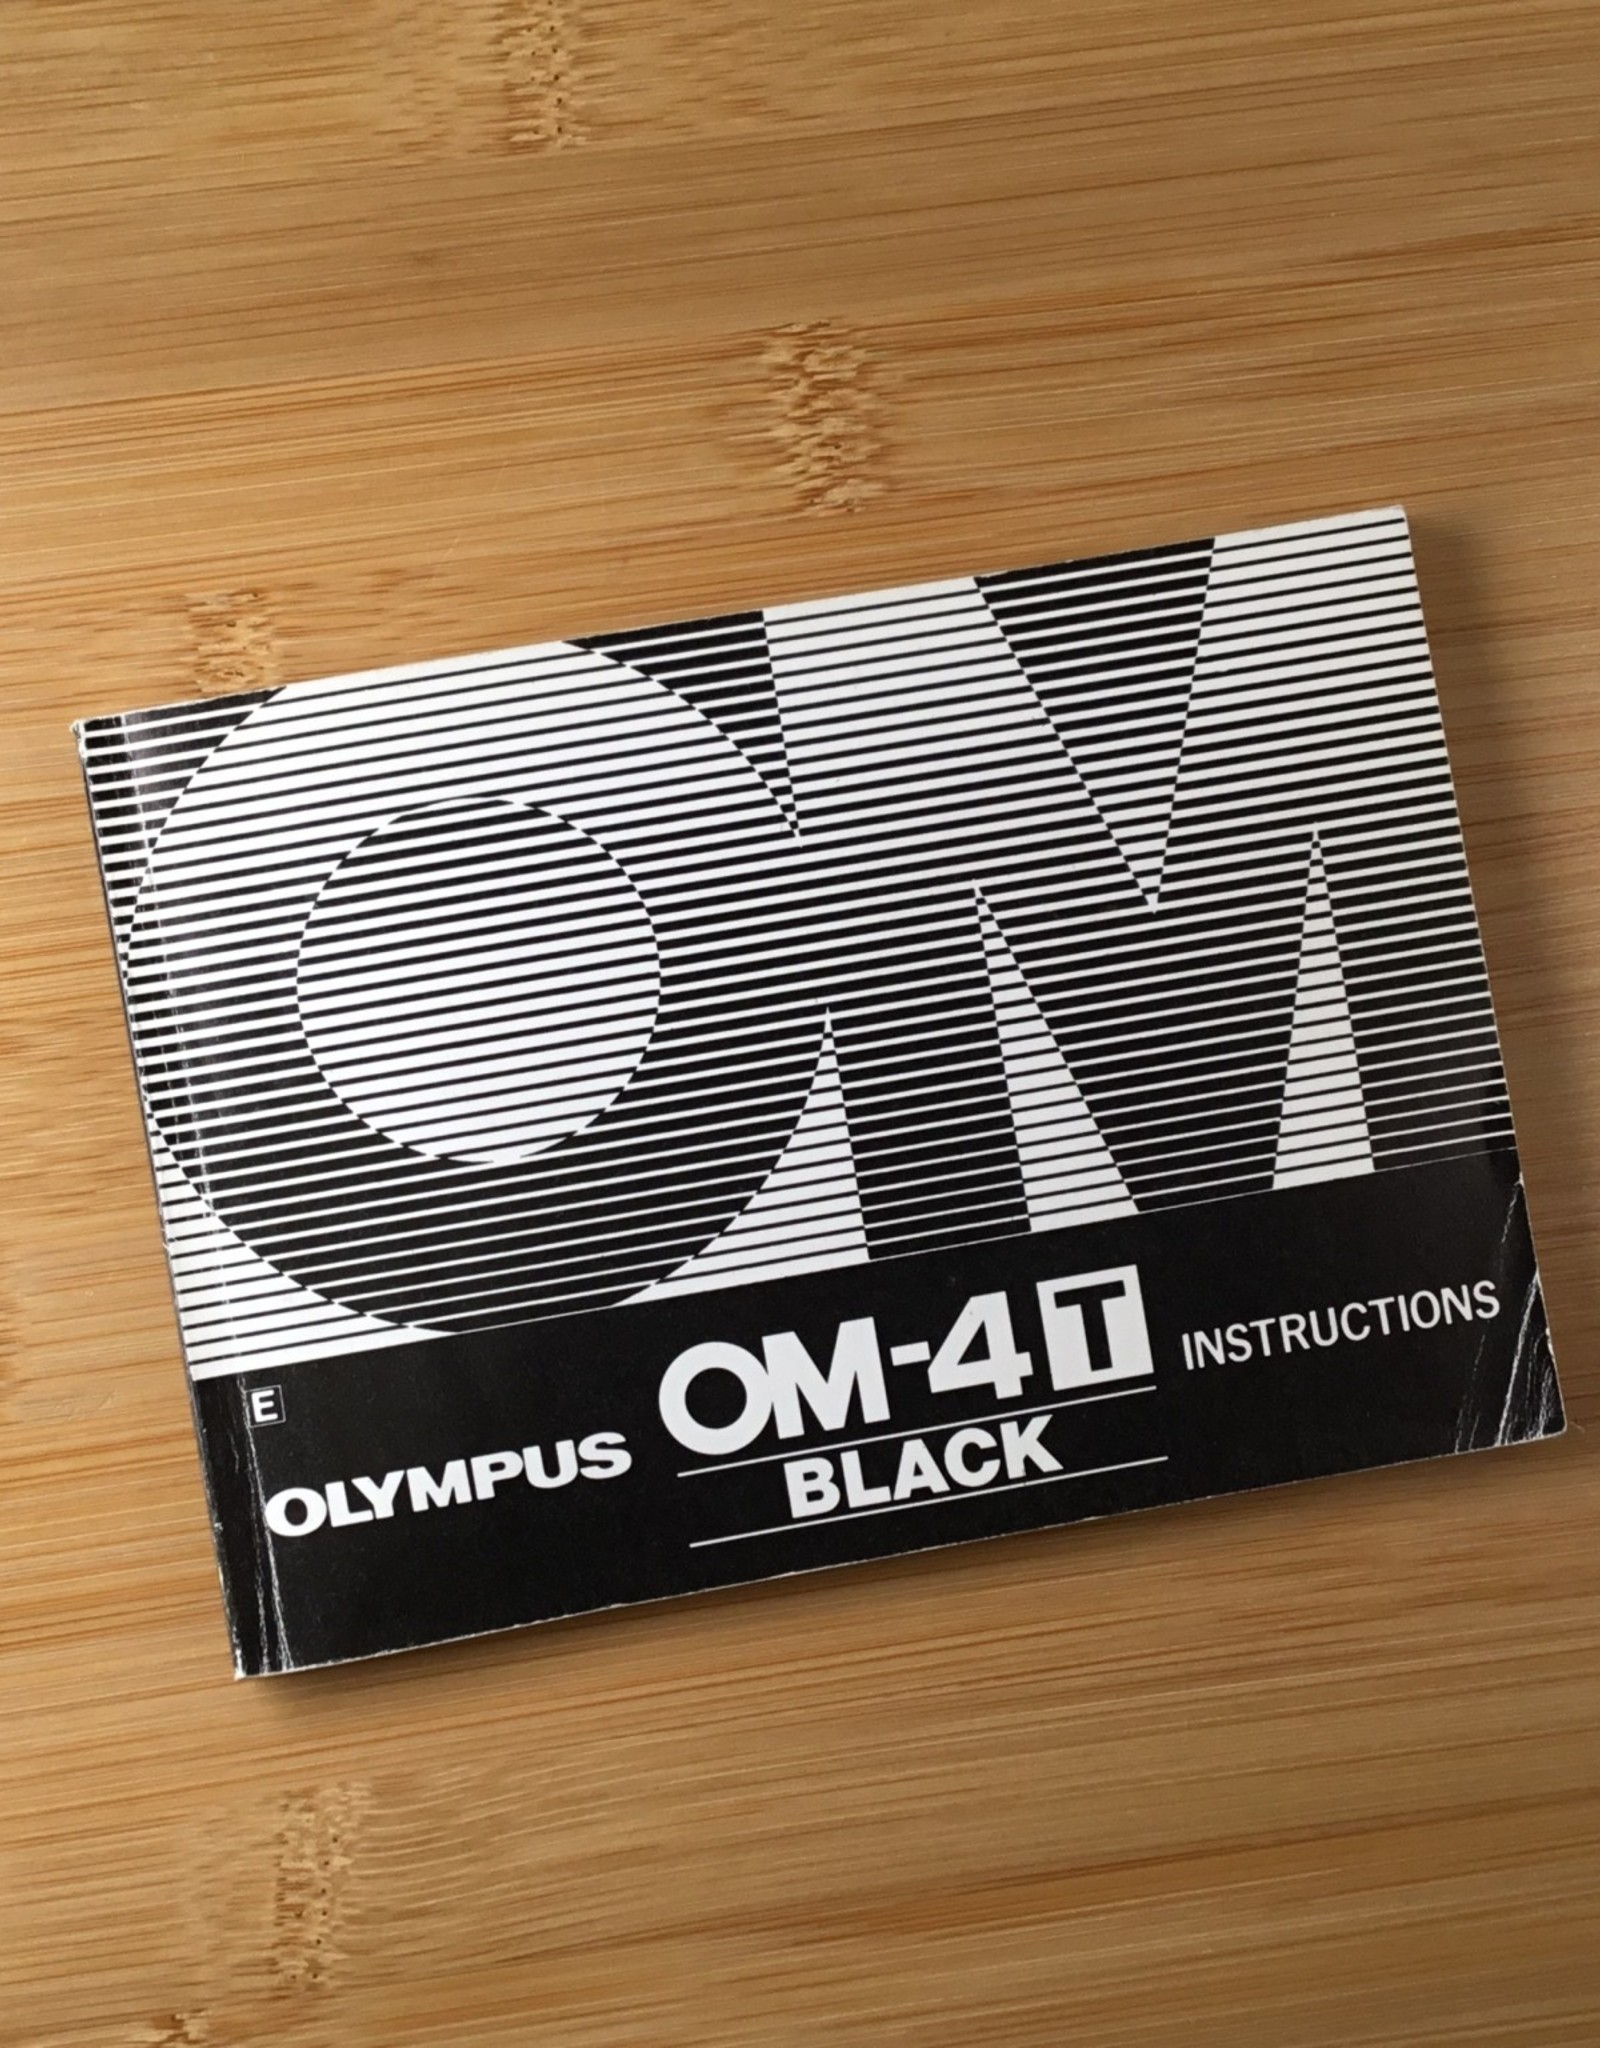 OLYMPUS Olympus OM-4T  Black Original Manual Used EX